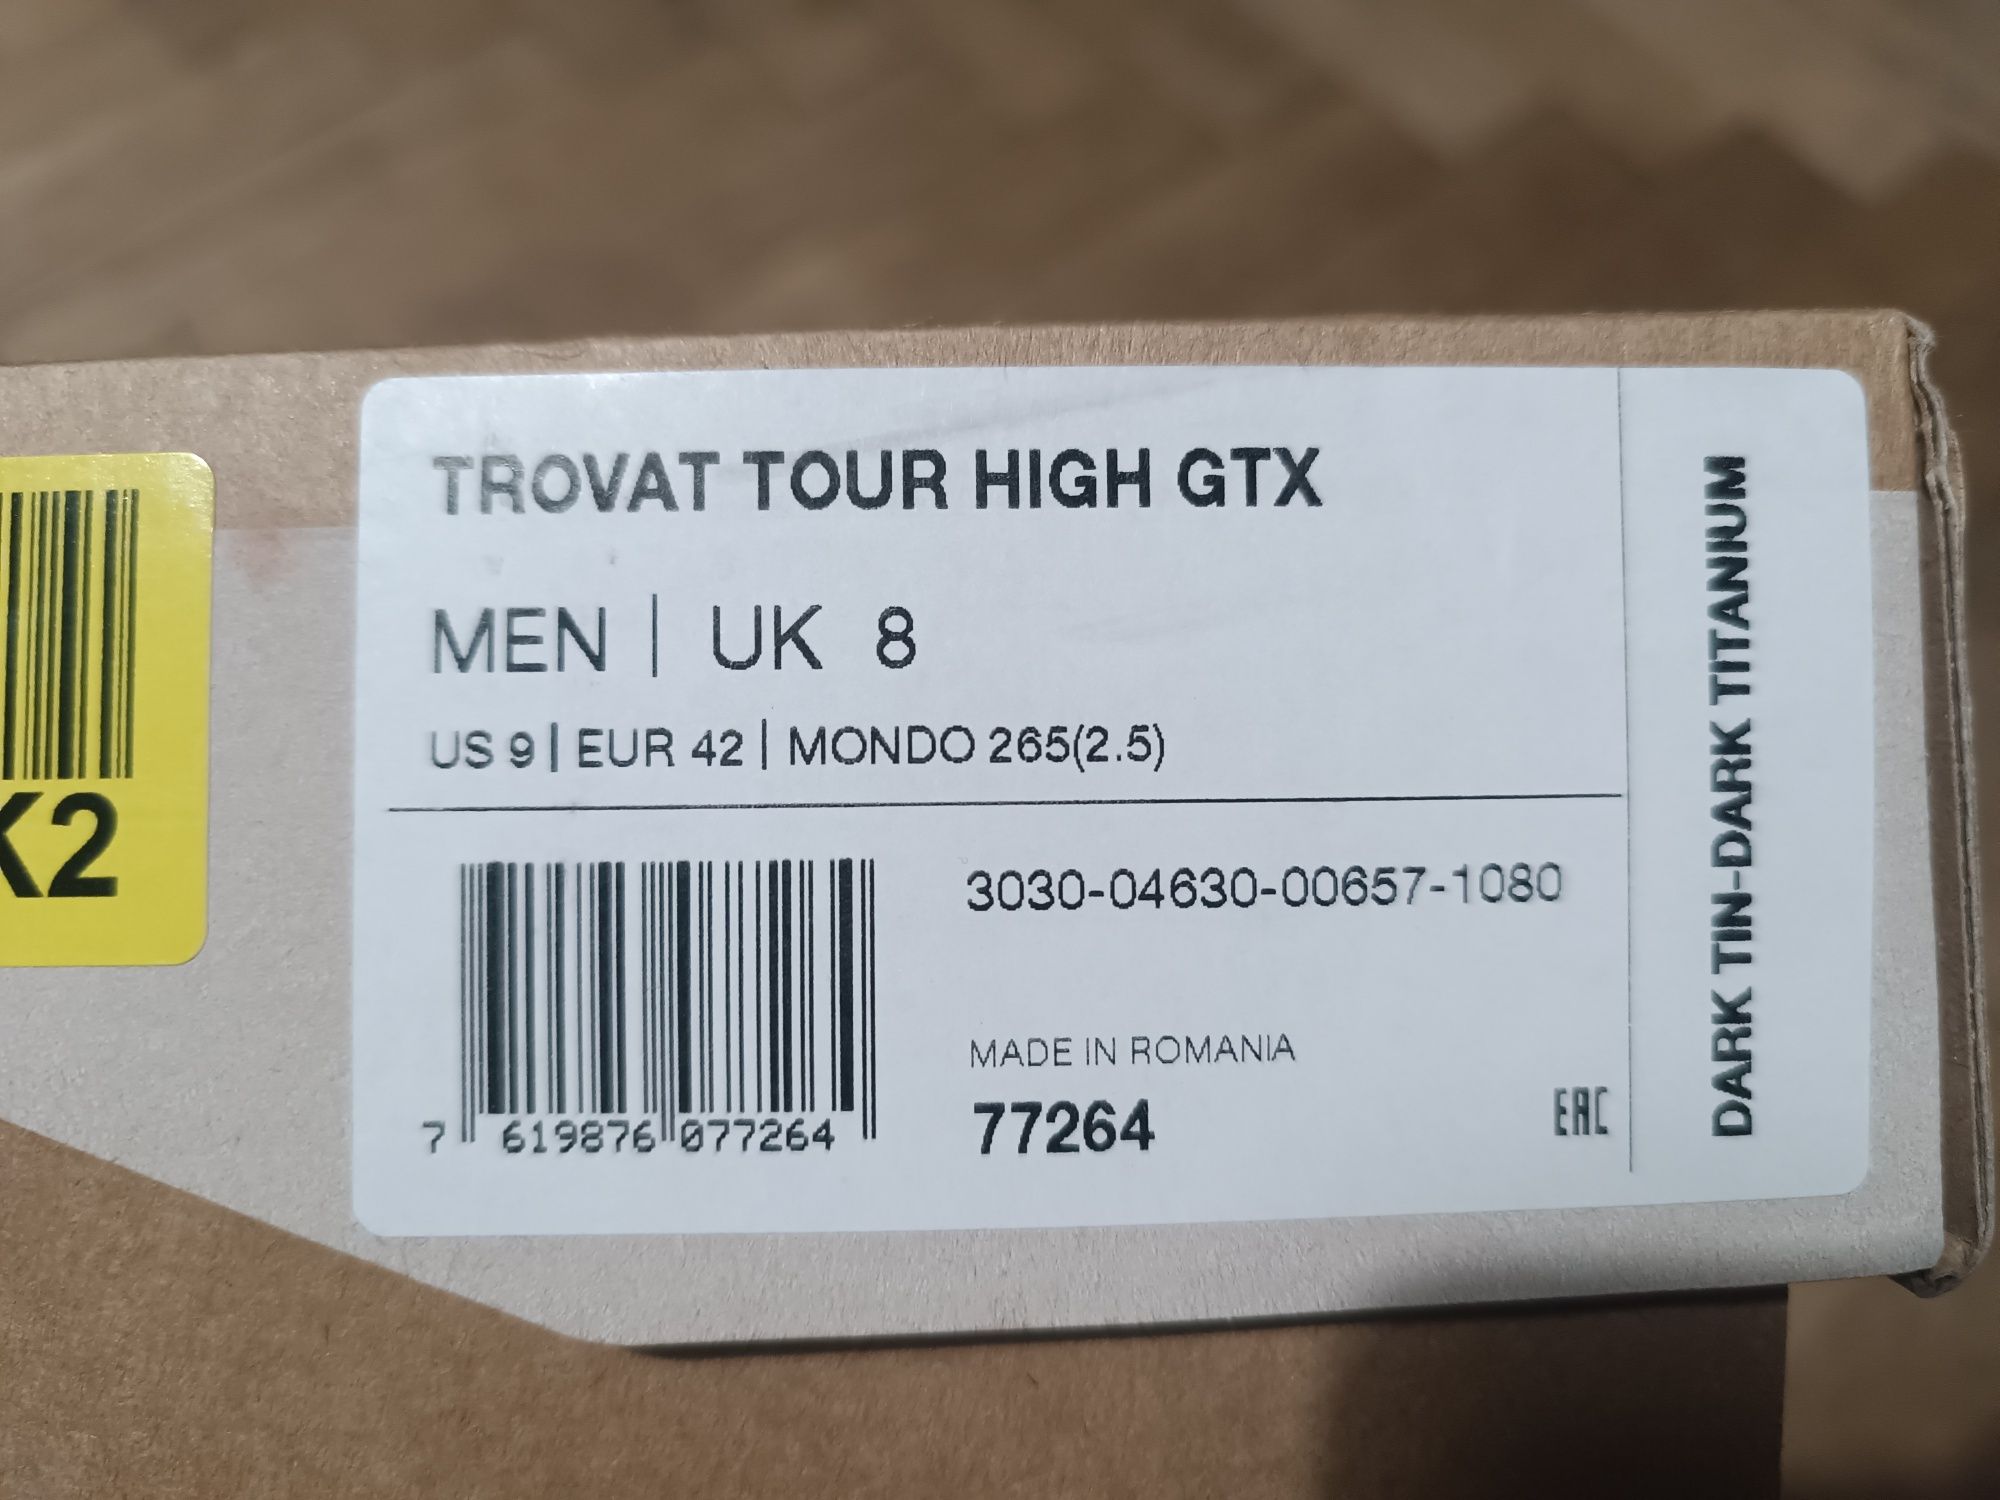 Buty trekkingowe Mammut Trovat Tour High GTX r. 42, 26.5 cm